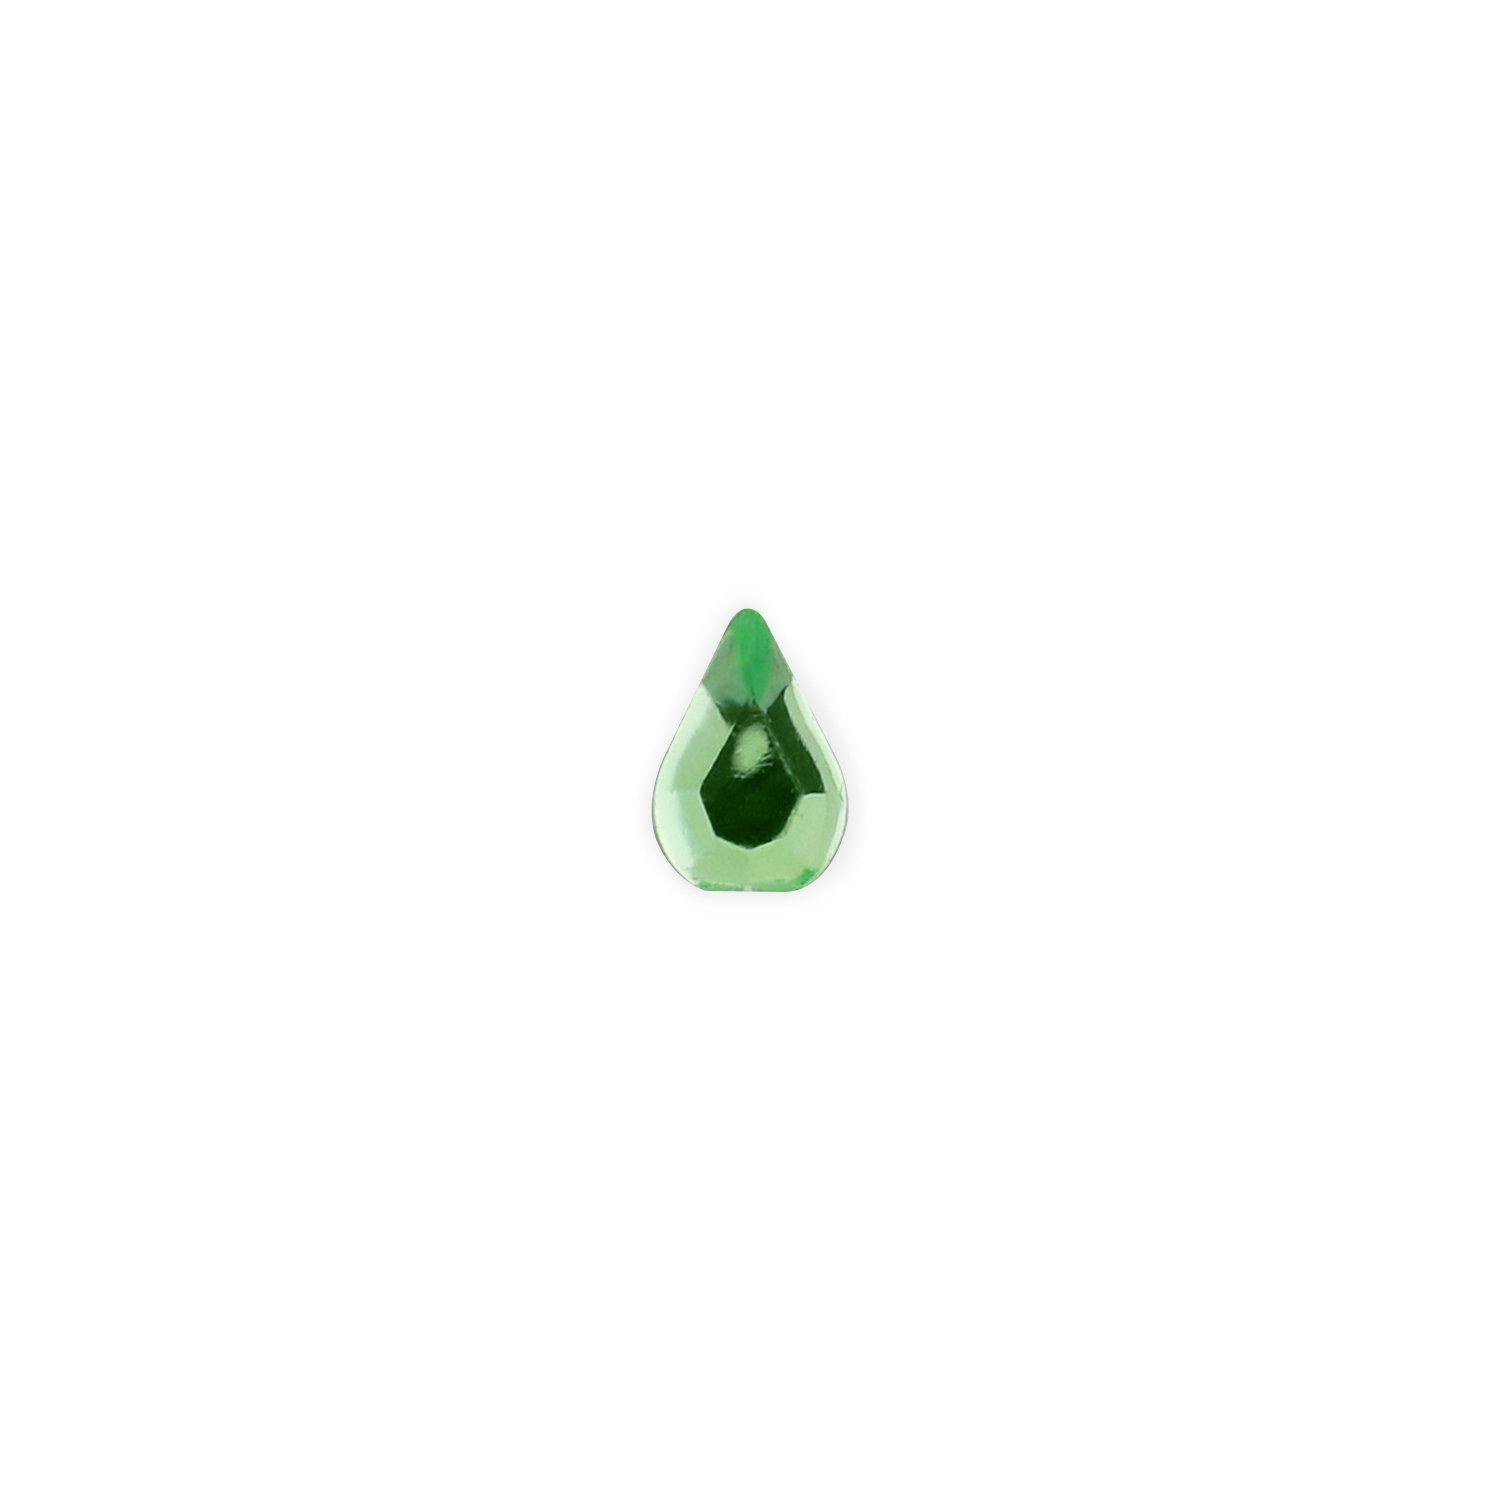 Green Teardrop Logo - Light Green Teardrop Rhinestones of 100